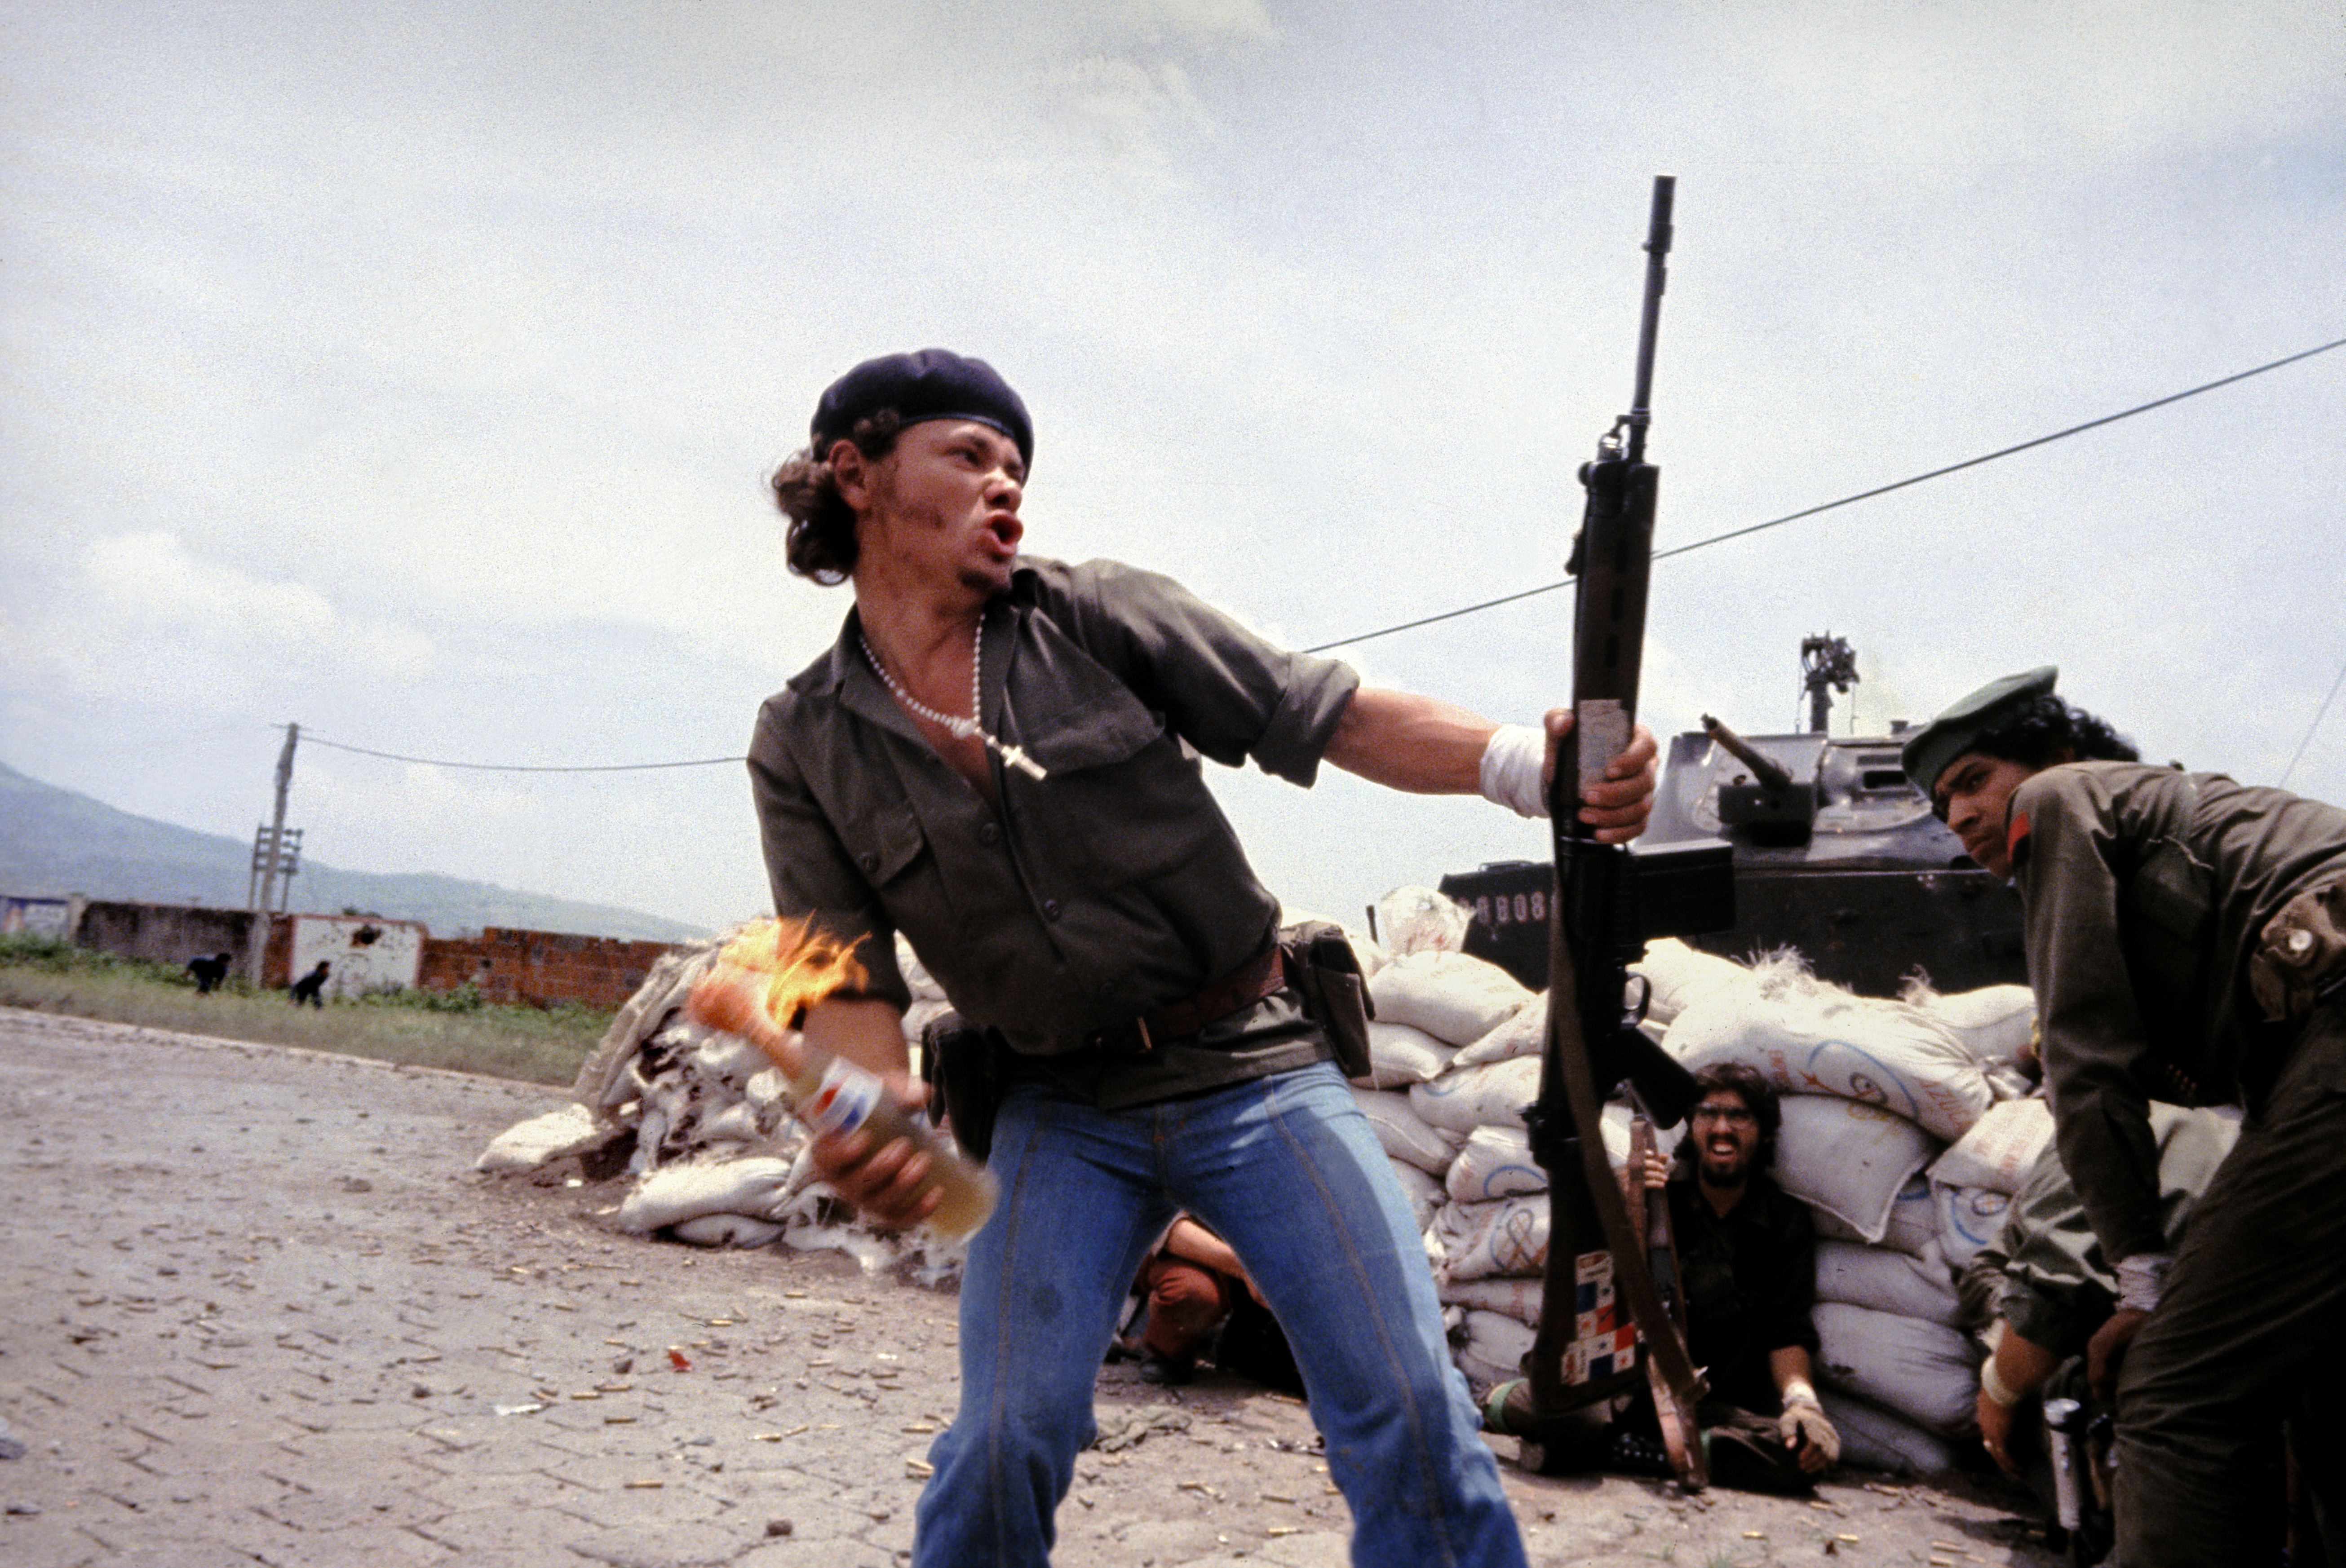 Susan Meiselas, Sandinistes devant le quartier général de la Garde nationale à Estelí. Nicaragua, juillet 1979 © Susan Meiselas / Magnum Photos